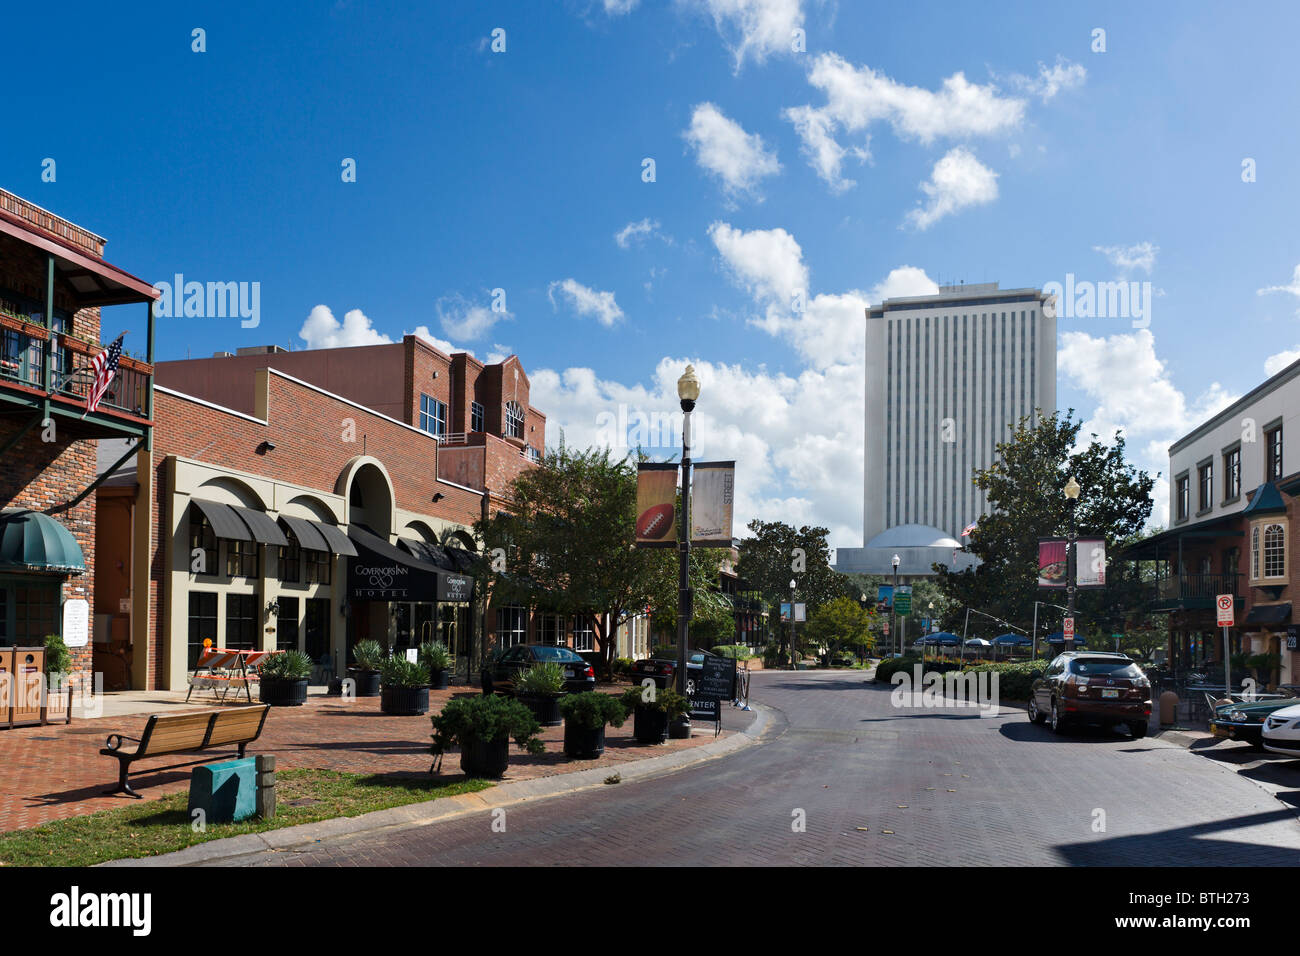 Adams Street avec le Governor's Inn Hotel à gauche et le nouveau bâtiment du Capitole de l'État derrière, Tallahassee, Florida, USA Banque D'Images